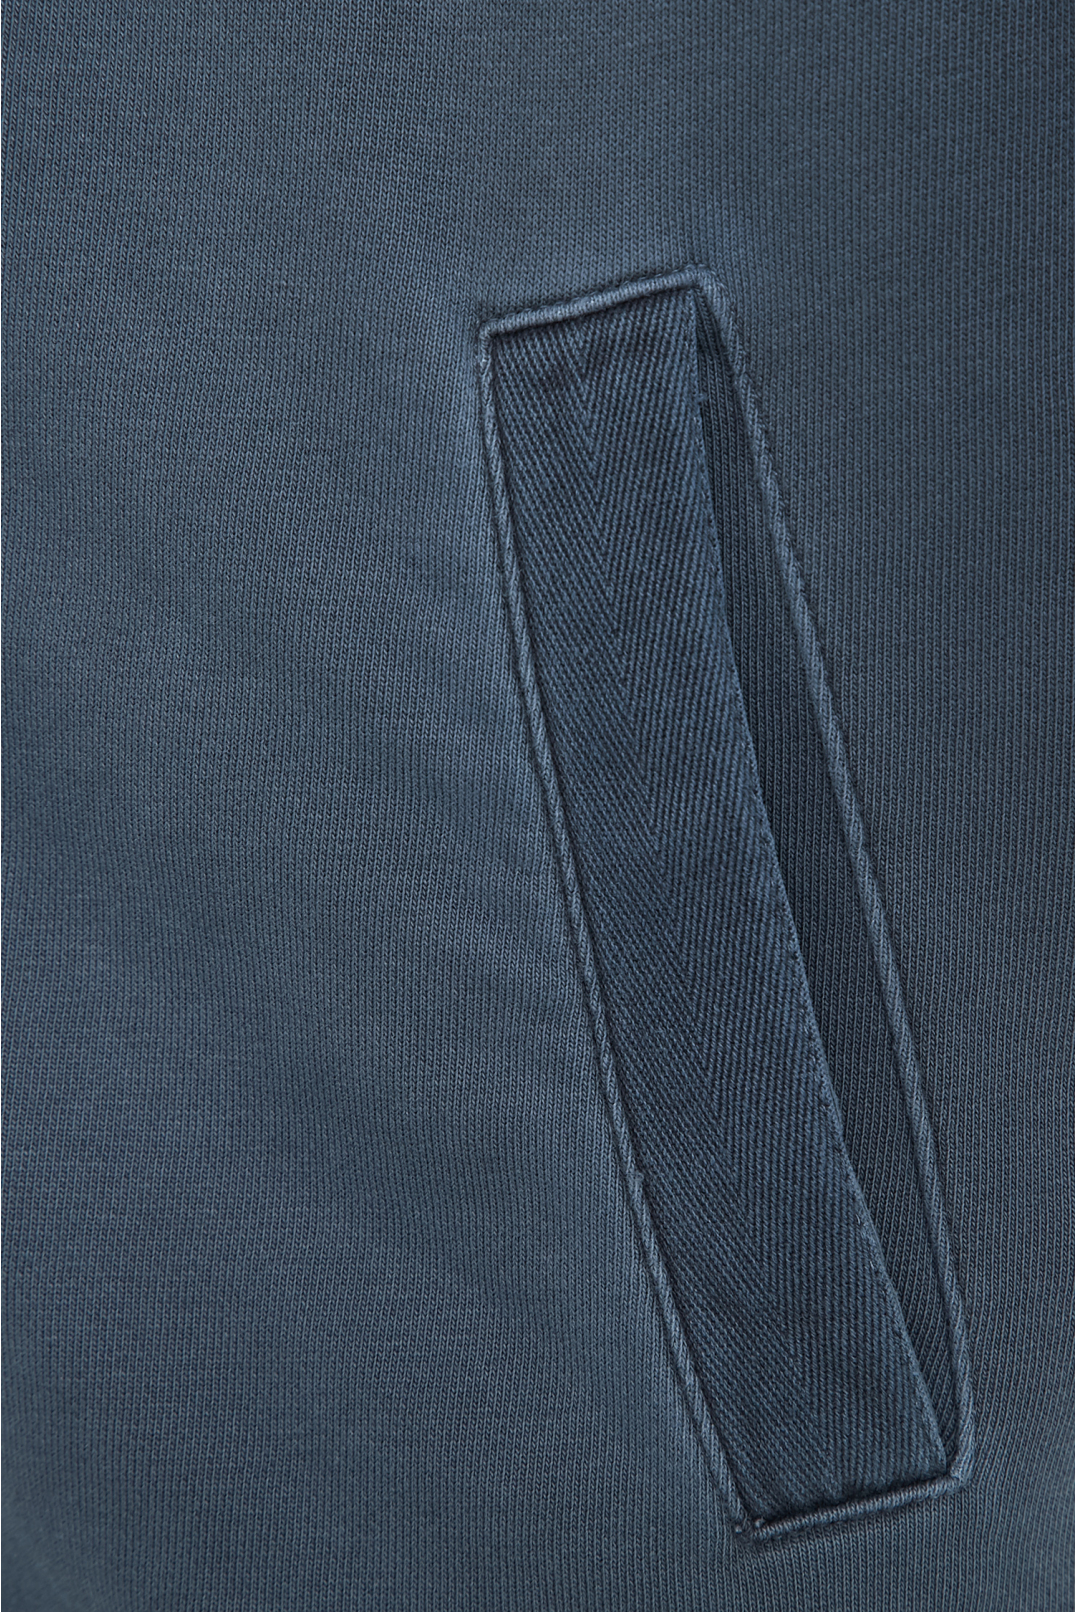 Чоловічий синій спортивний костюм (кофта, штани) - 4